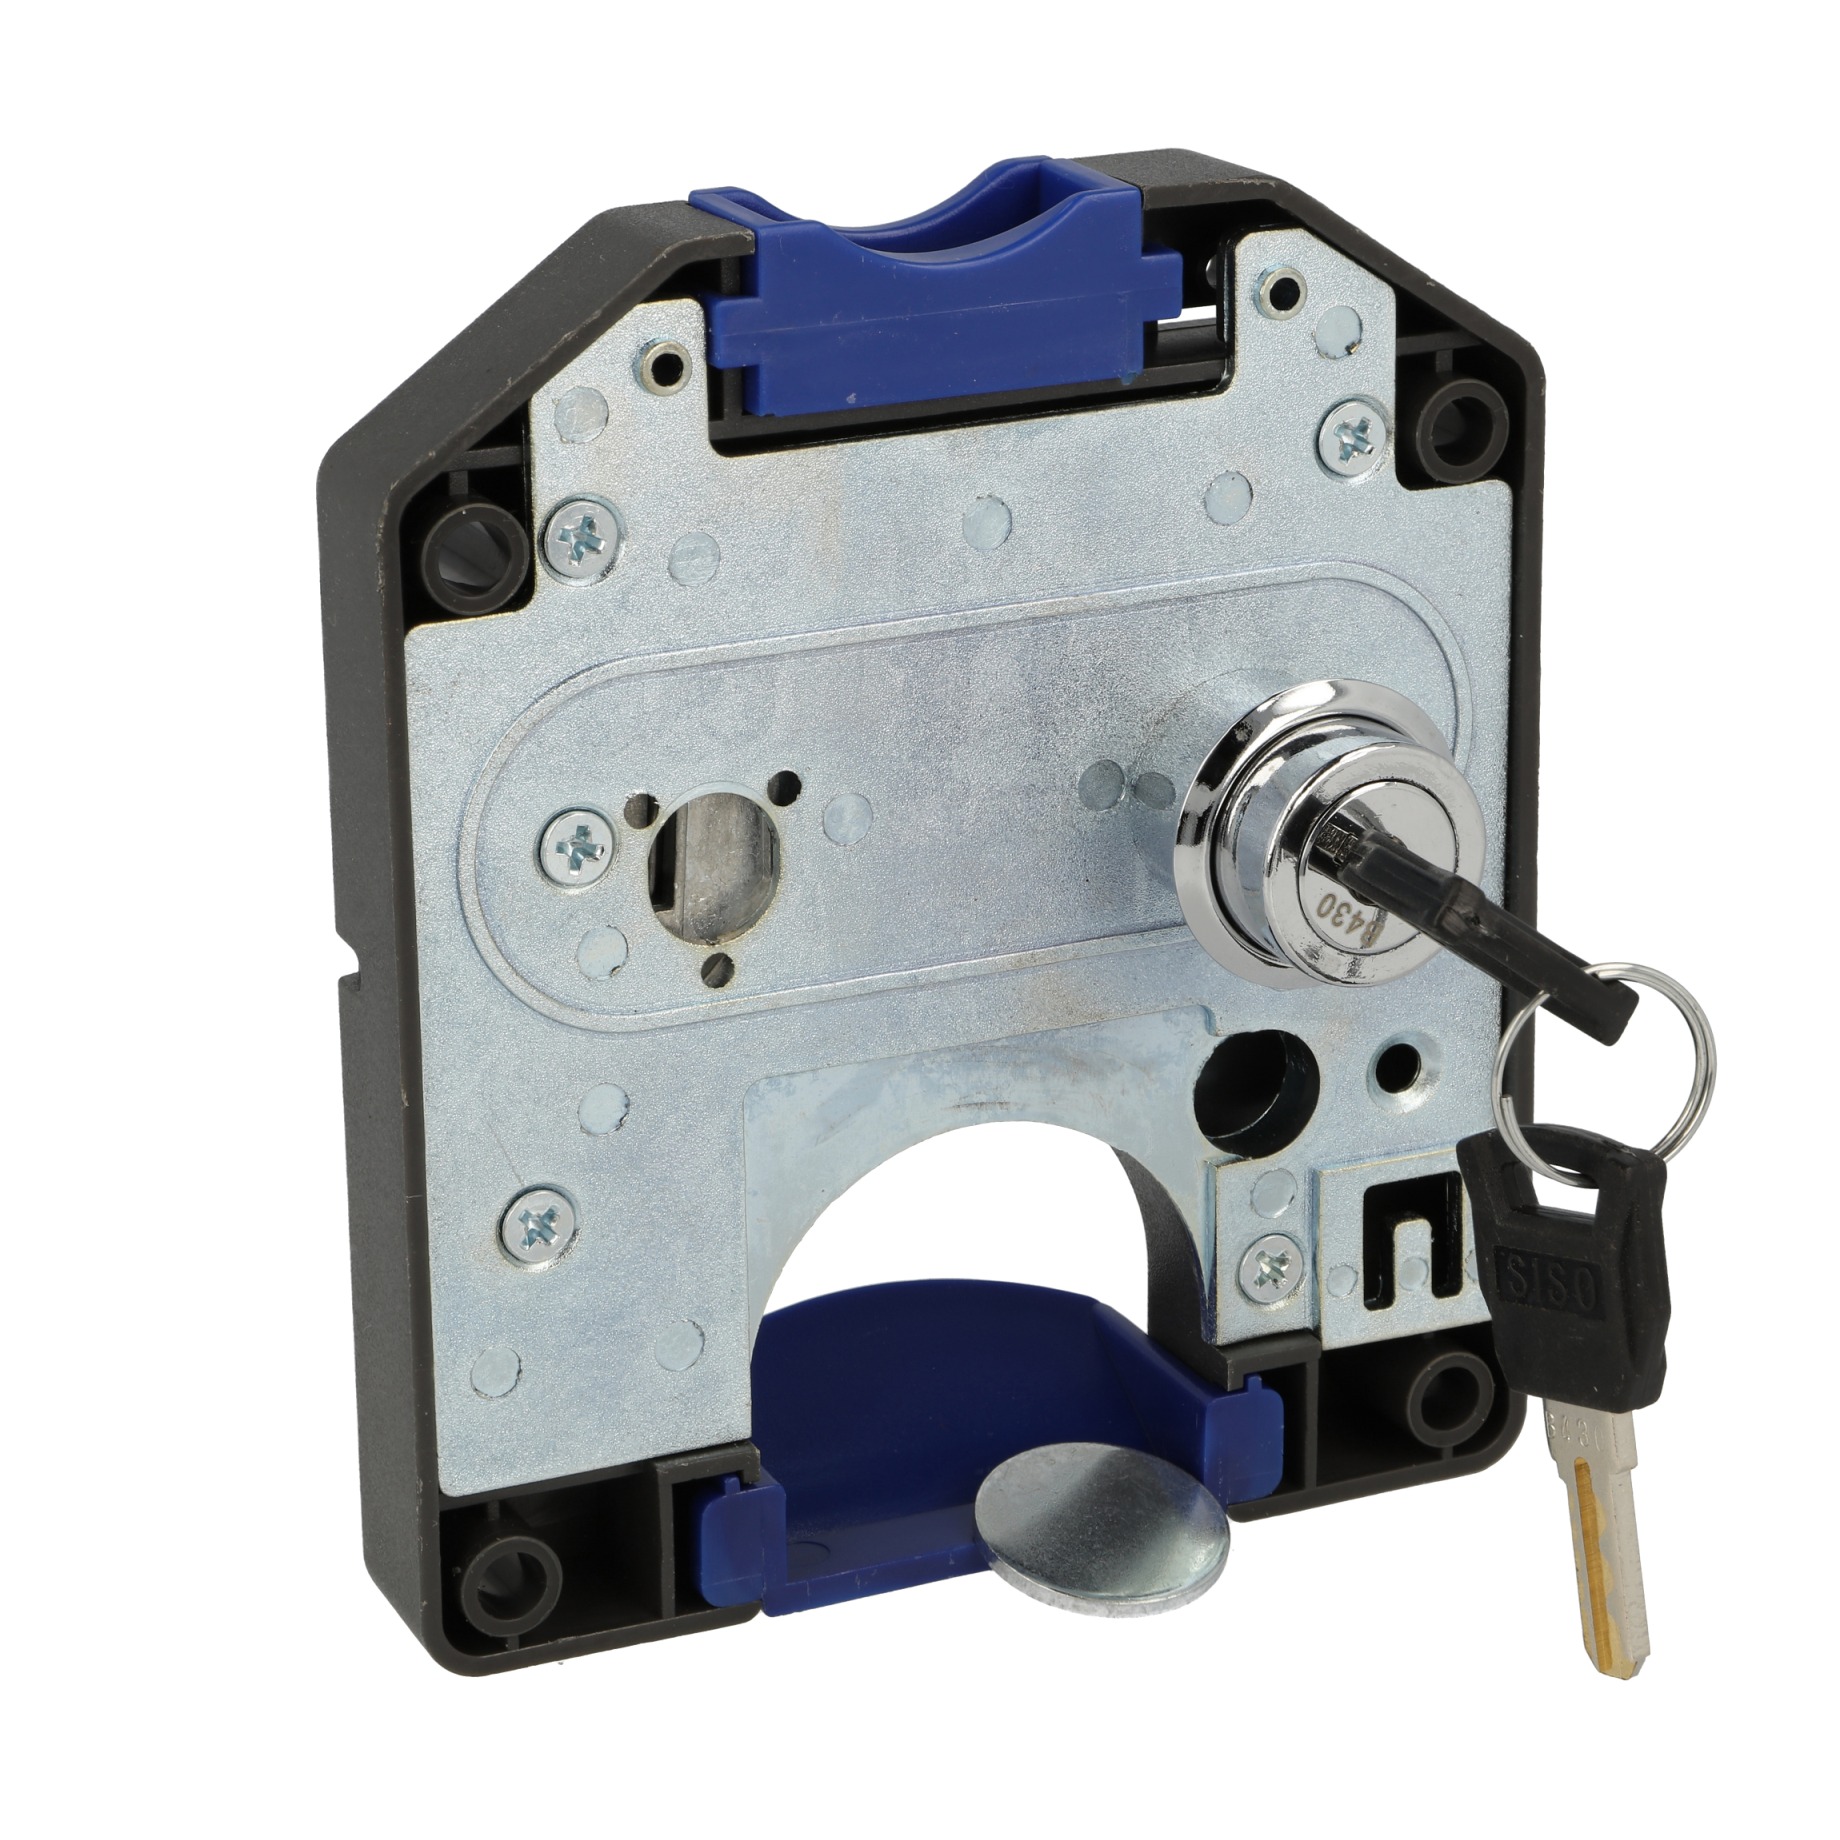 4 claves de las cerraduras de llave para taquillas